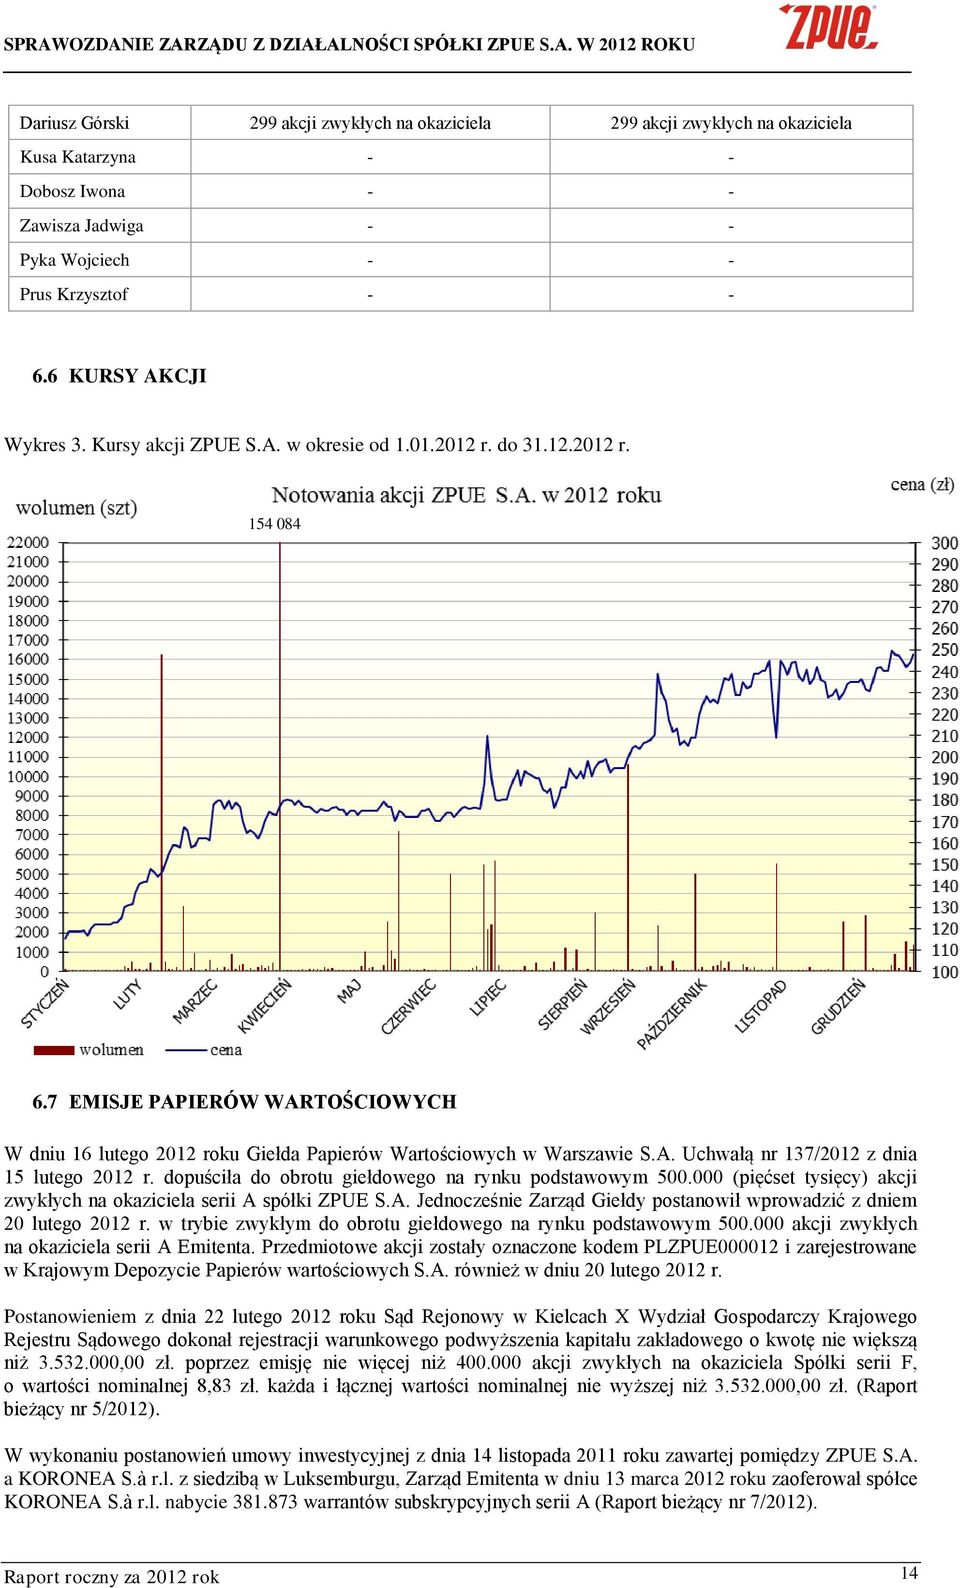 dopuściła do obrotu giełdowego na rynku podstawowym 500.000 (pięćset tysięcy) akcji zwykłych na okaziciela serii A spółki ZPUE S.A. Jednocześnie Zarząd Giełdy postanowił wprowadzić z dniem 20 lutego 2012 r.